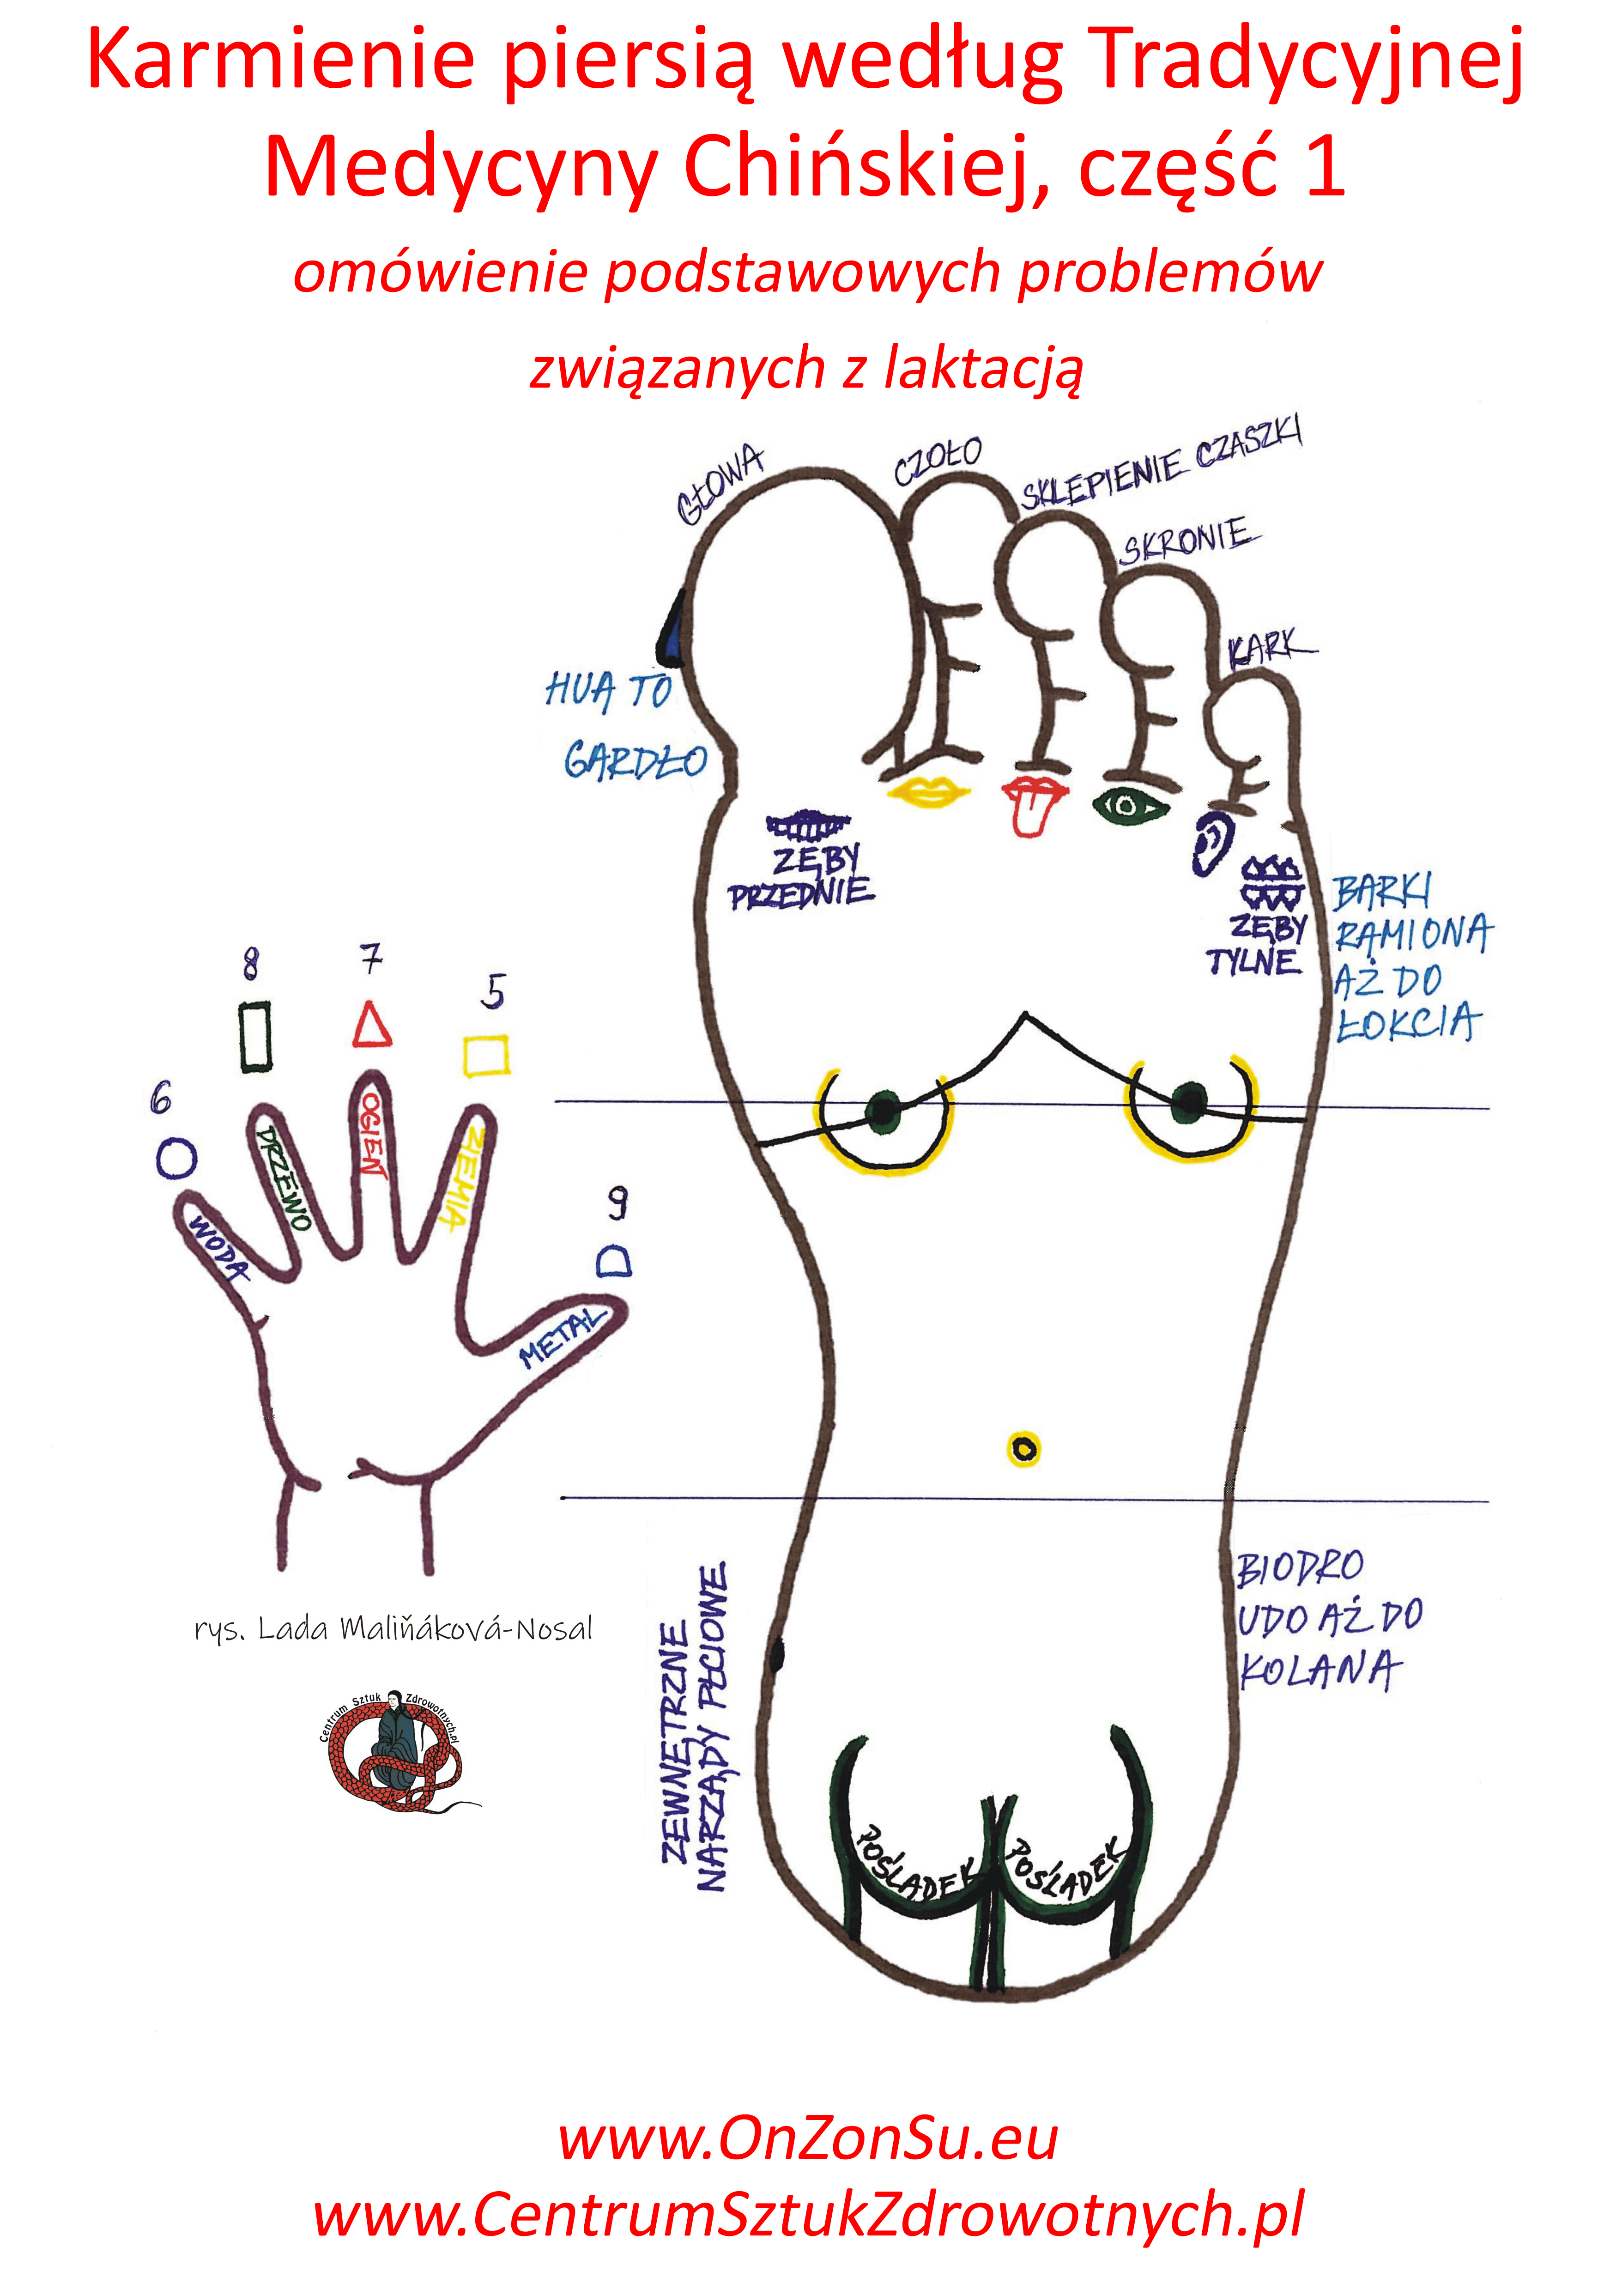 Kurs masażu stóp On Zon Su, Szkolenia refleksologii stóp - Karmienie piersią według Tradycyjnej Medycyny Chińskiej oraz omówienie podstawowych problemów związanych z laktacją, część 1 MEM.jpg